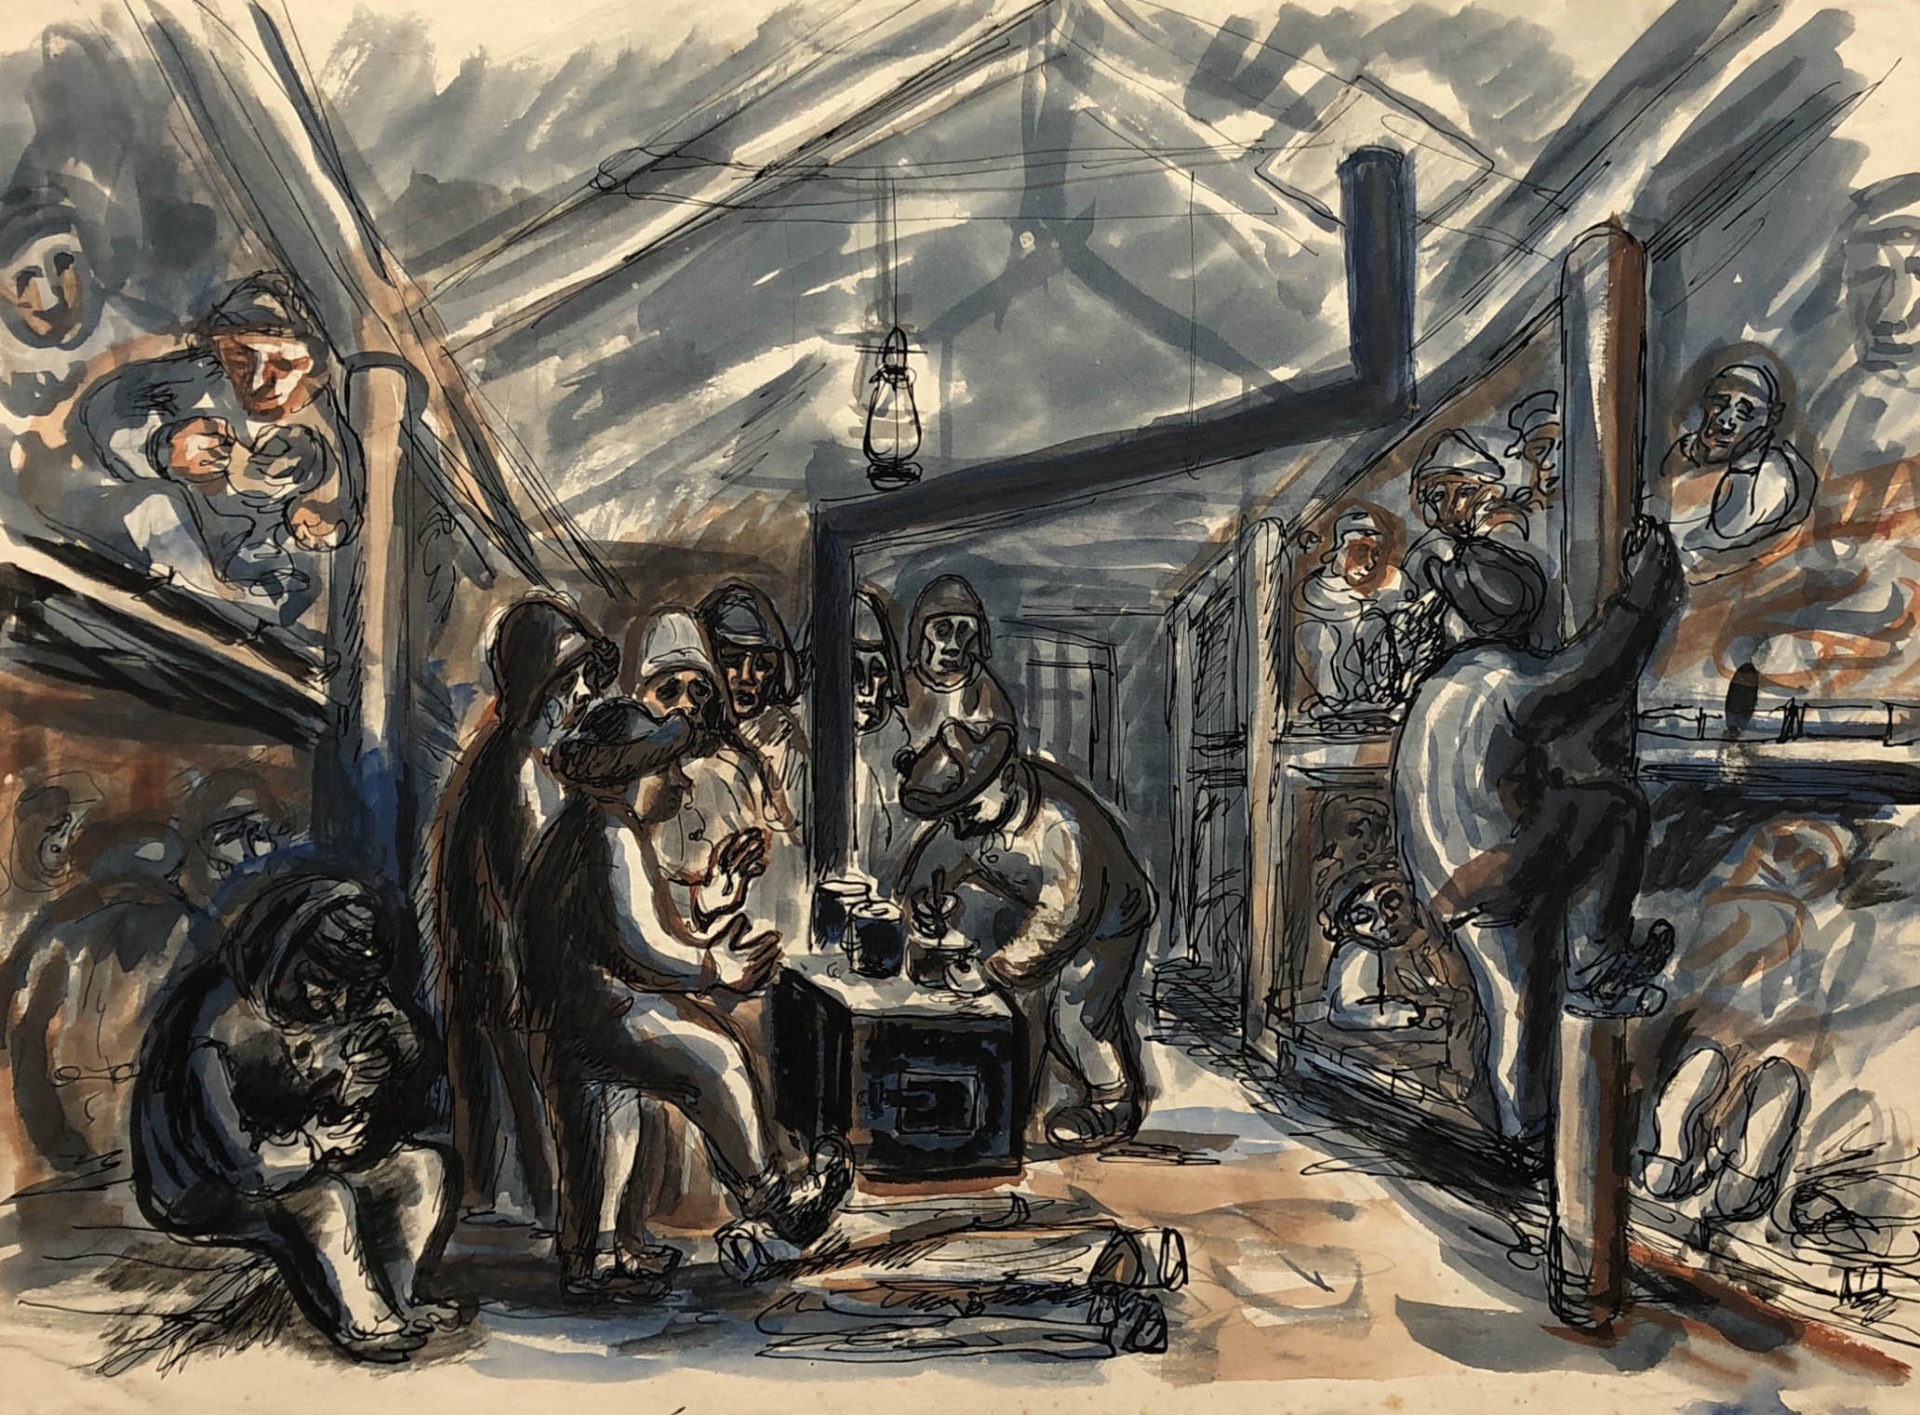 Praca przedstawiająca więźniów w baraku w łagrze w Kożwie. Więźniowie leżą na pryczach oraz ogrzewają się przy piecu. Adam Kossowski, rys. piórkiem, akwarela, praca stworzona w Londynie w 1943 roku.